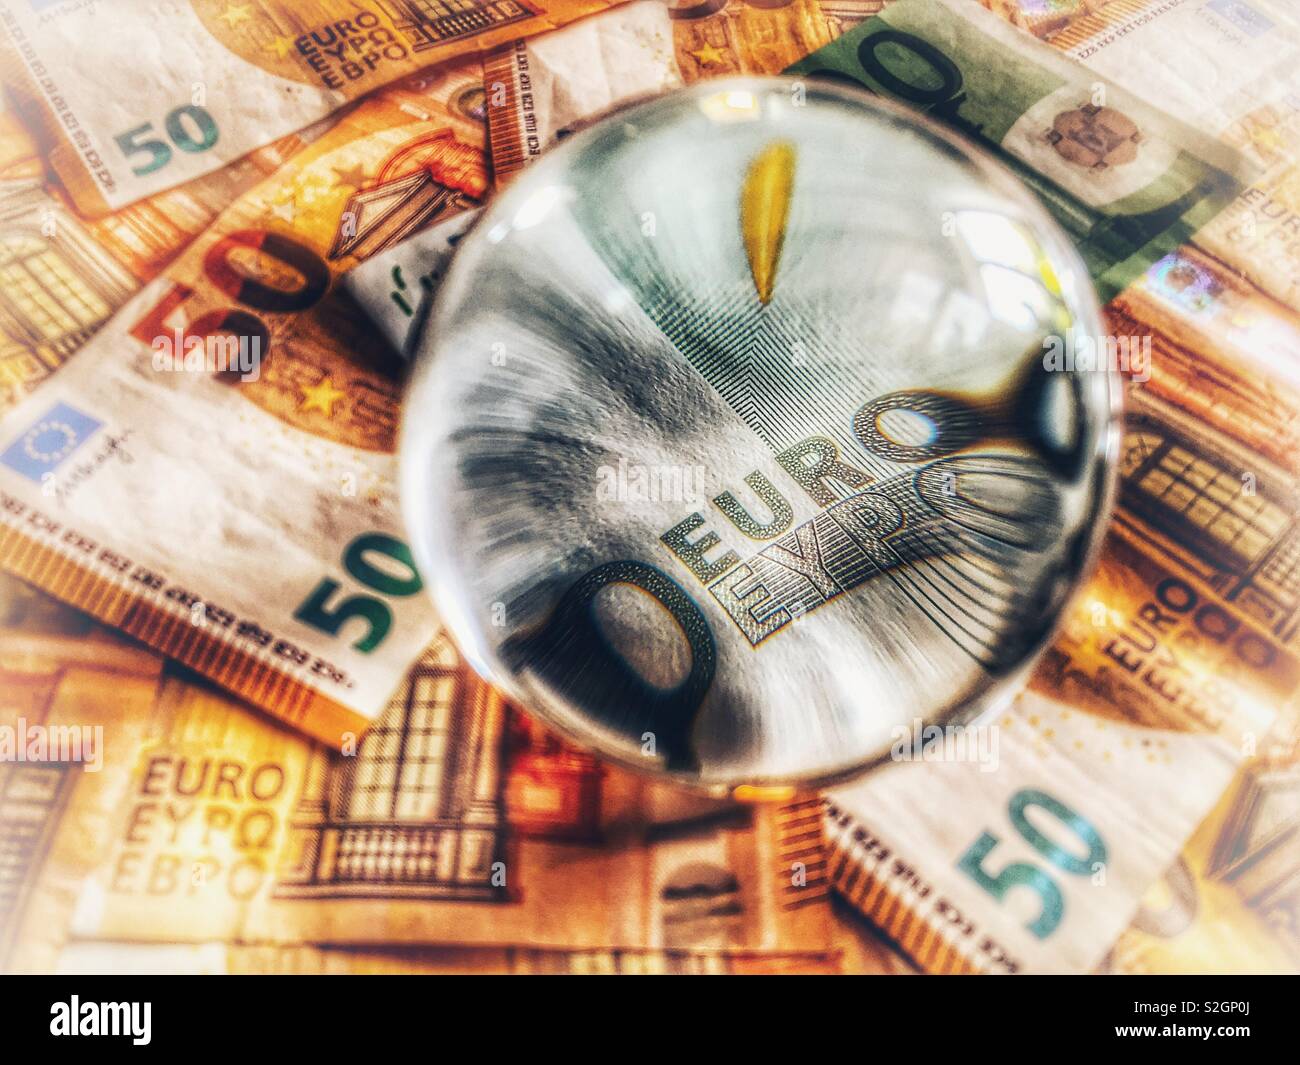 European currency, euros Stock Photo